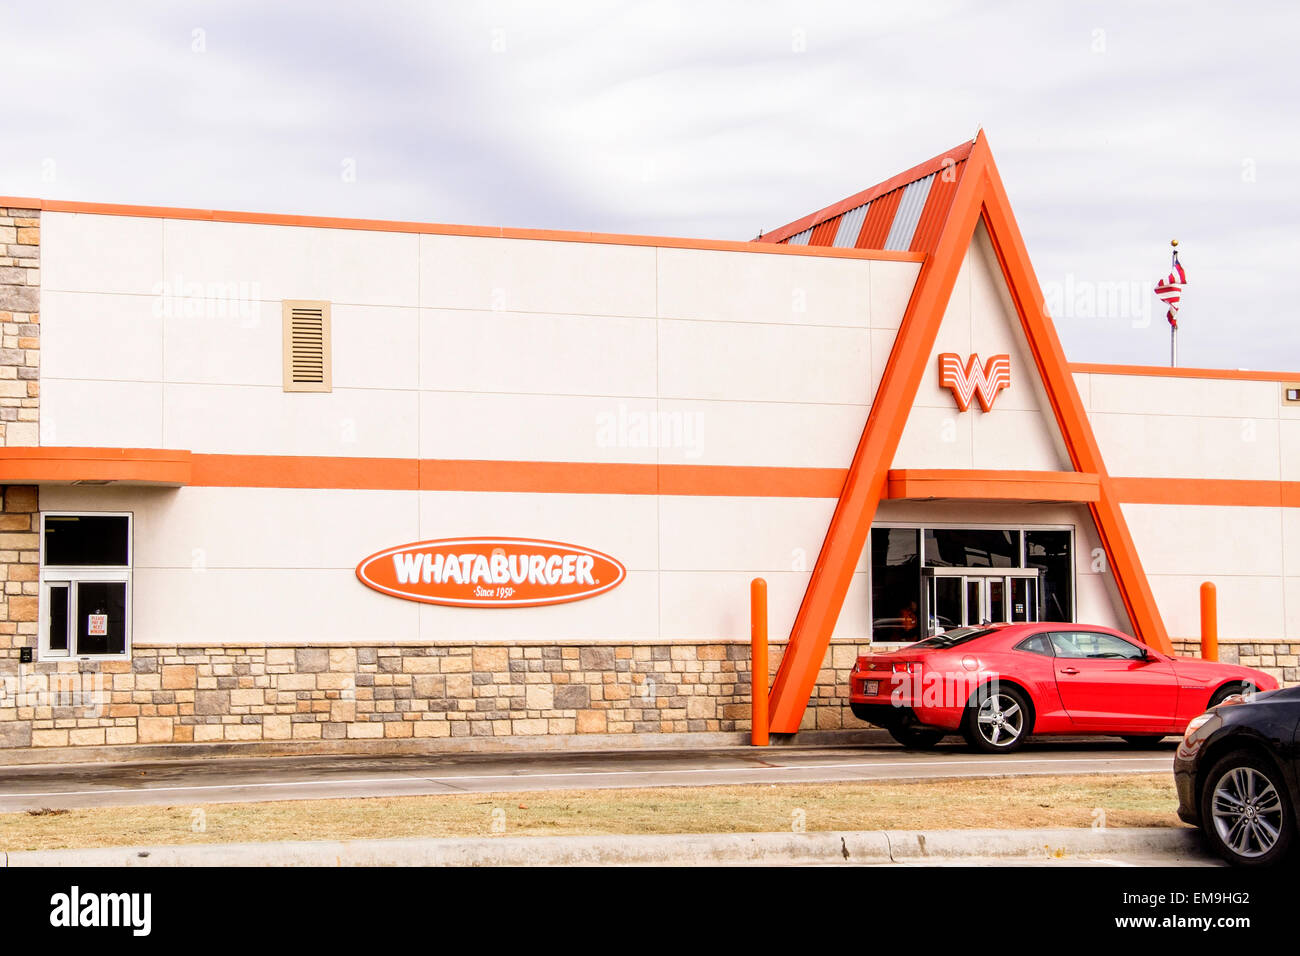 The front exterior of a Whataburger franchise hamburger restaurant. Oklahoma City, Oklahoma, USA. Stock Photo